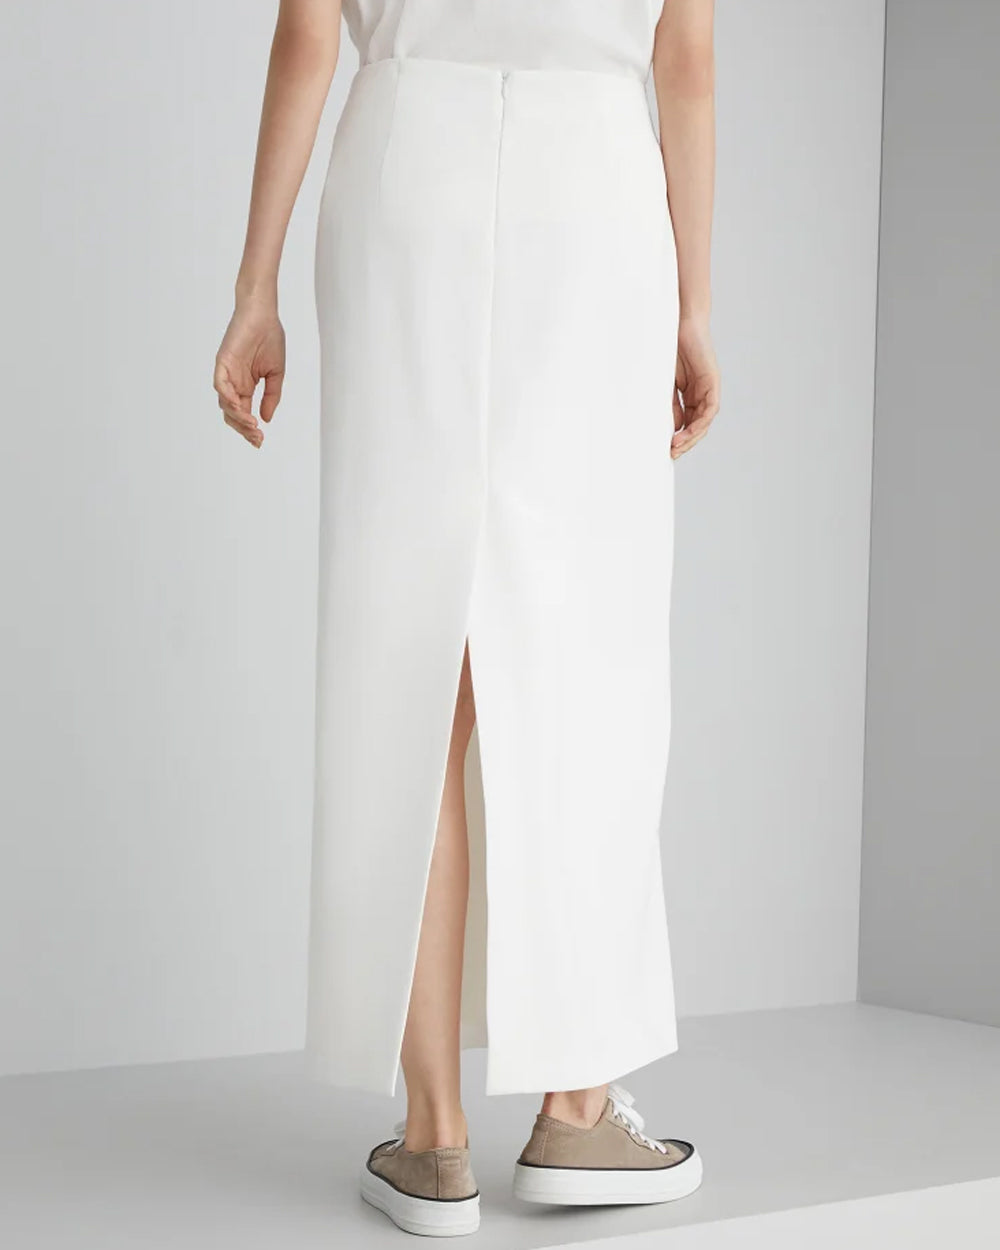 White Straight Midi Skirt